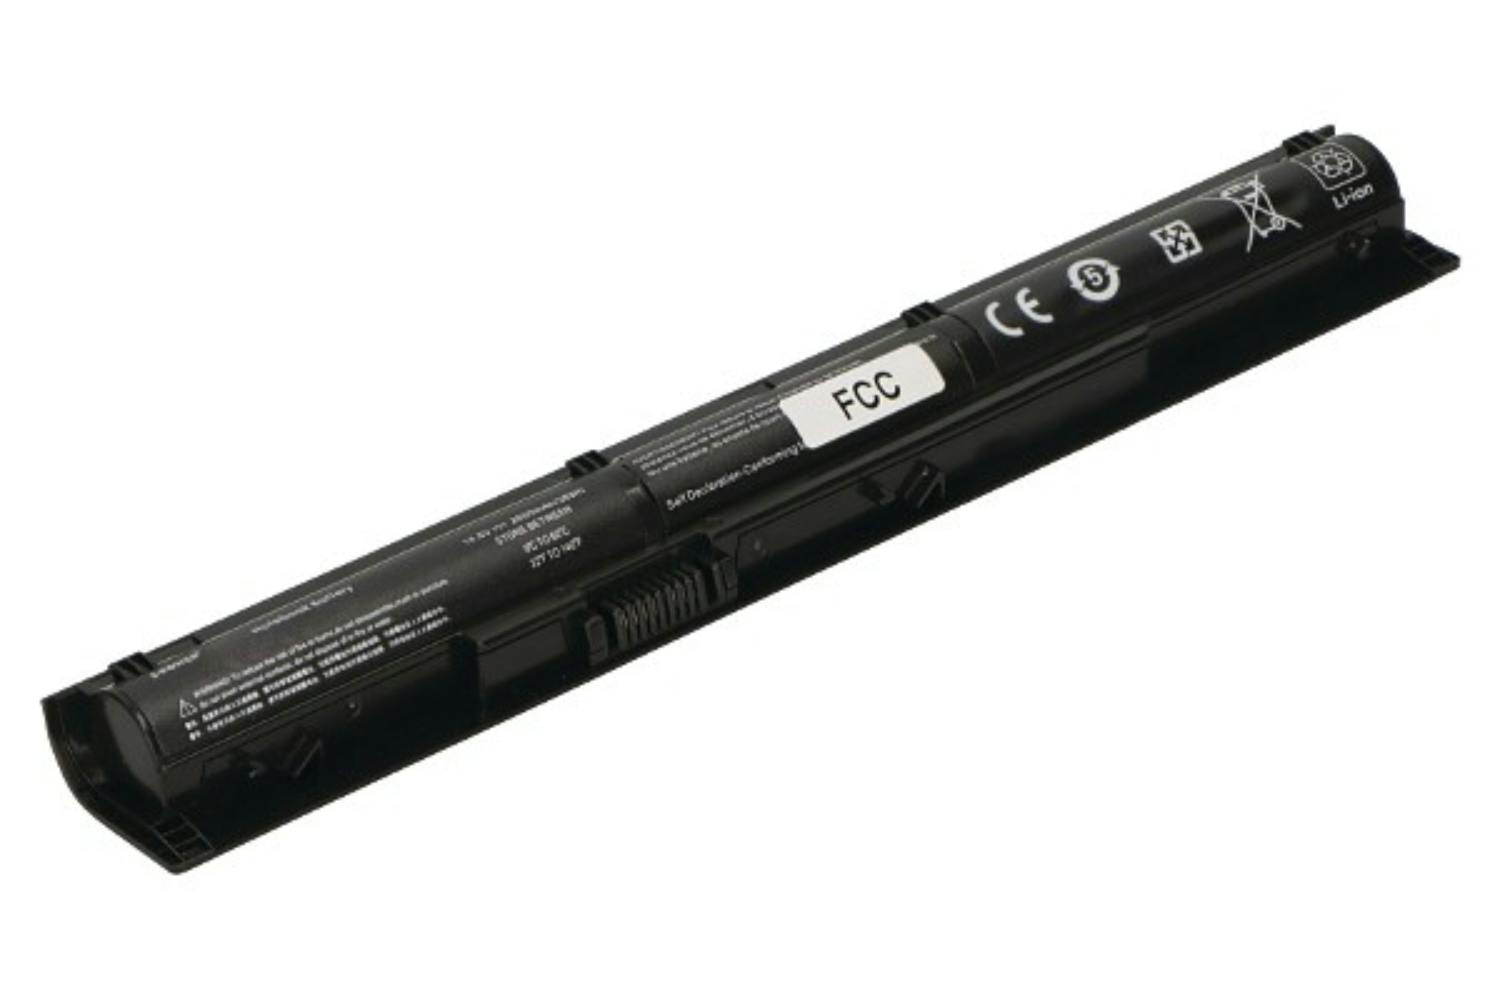 2-Power CBI3647A 2600mAh Main Battery Pack